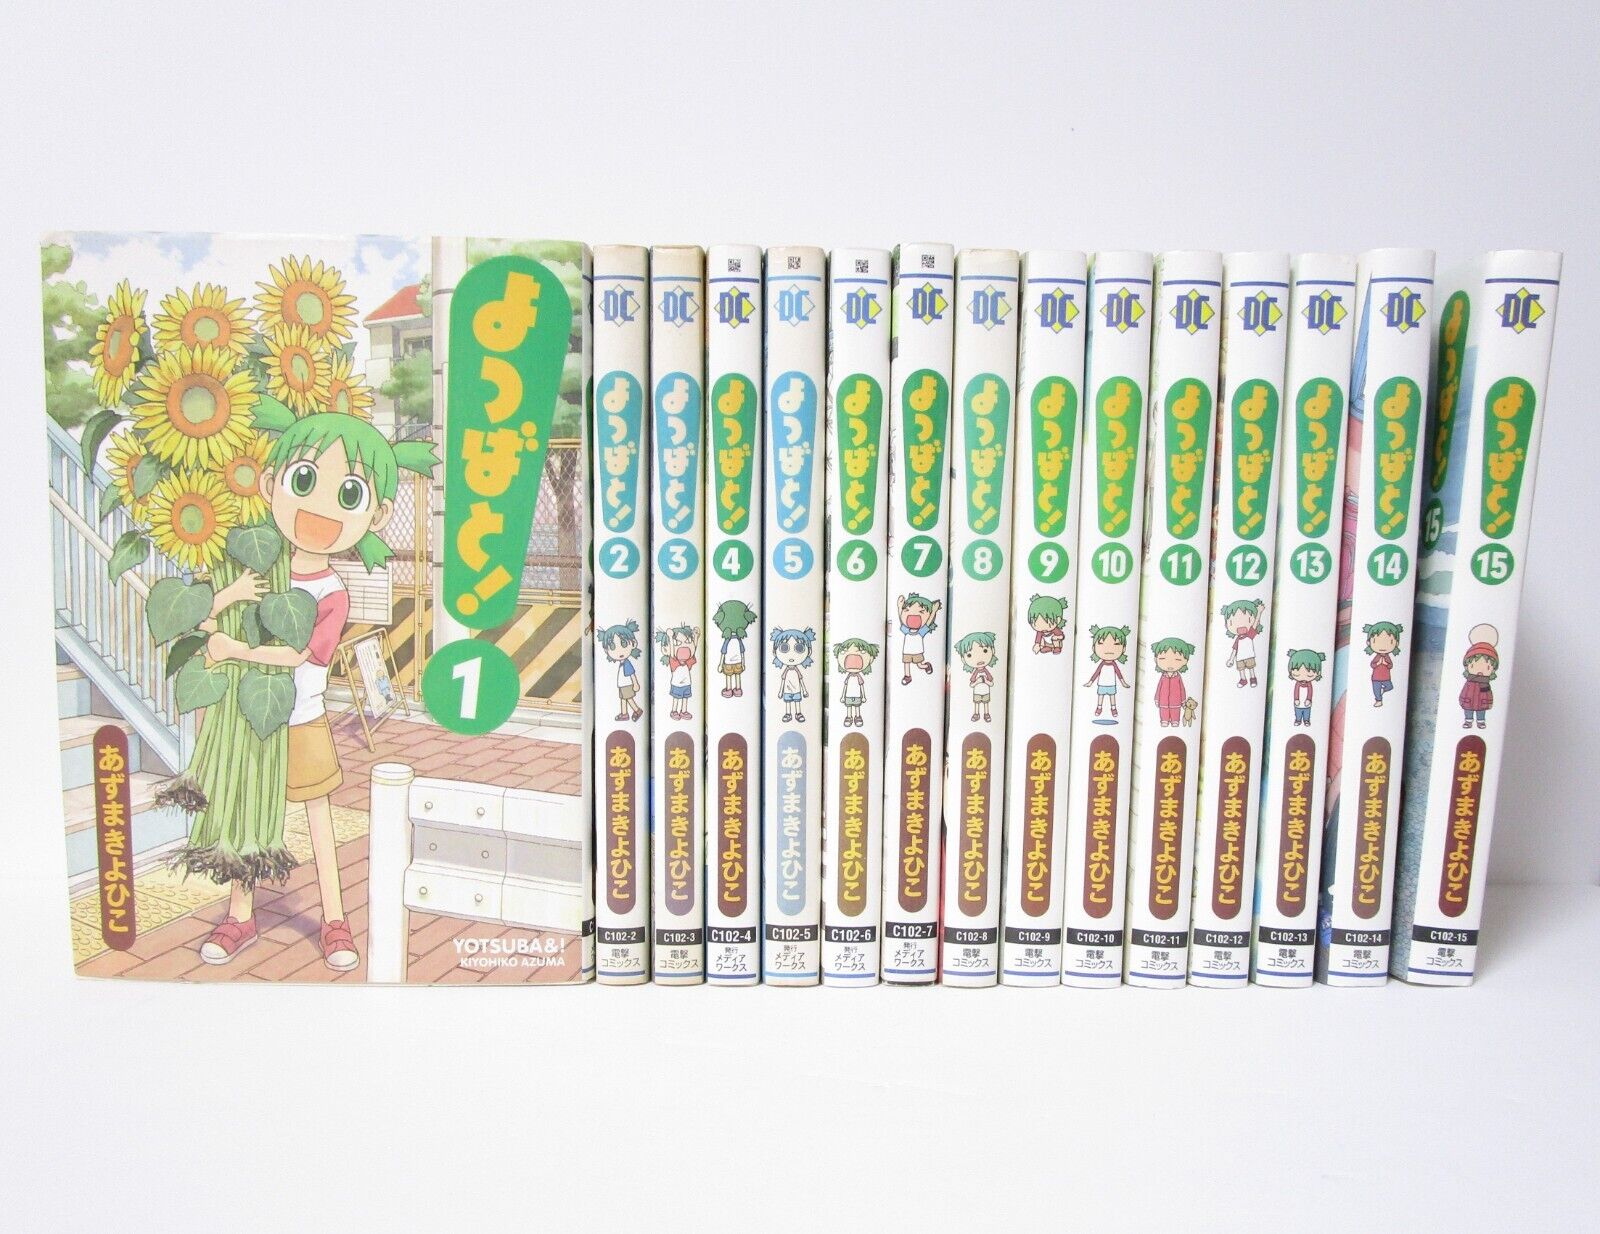 Yotsuba& YOTSUBATO Vol.1-15 Comics Set Japanese Ver Manga